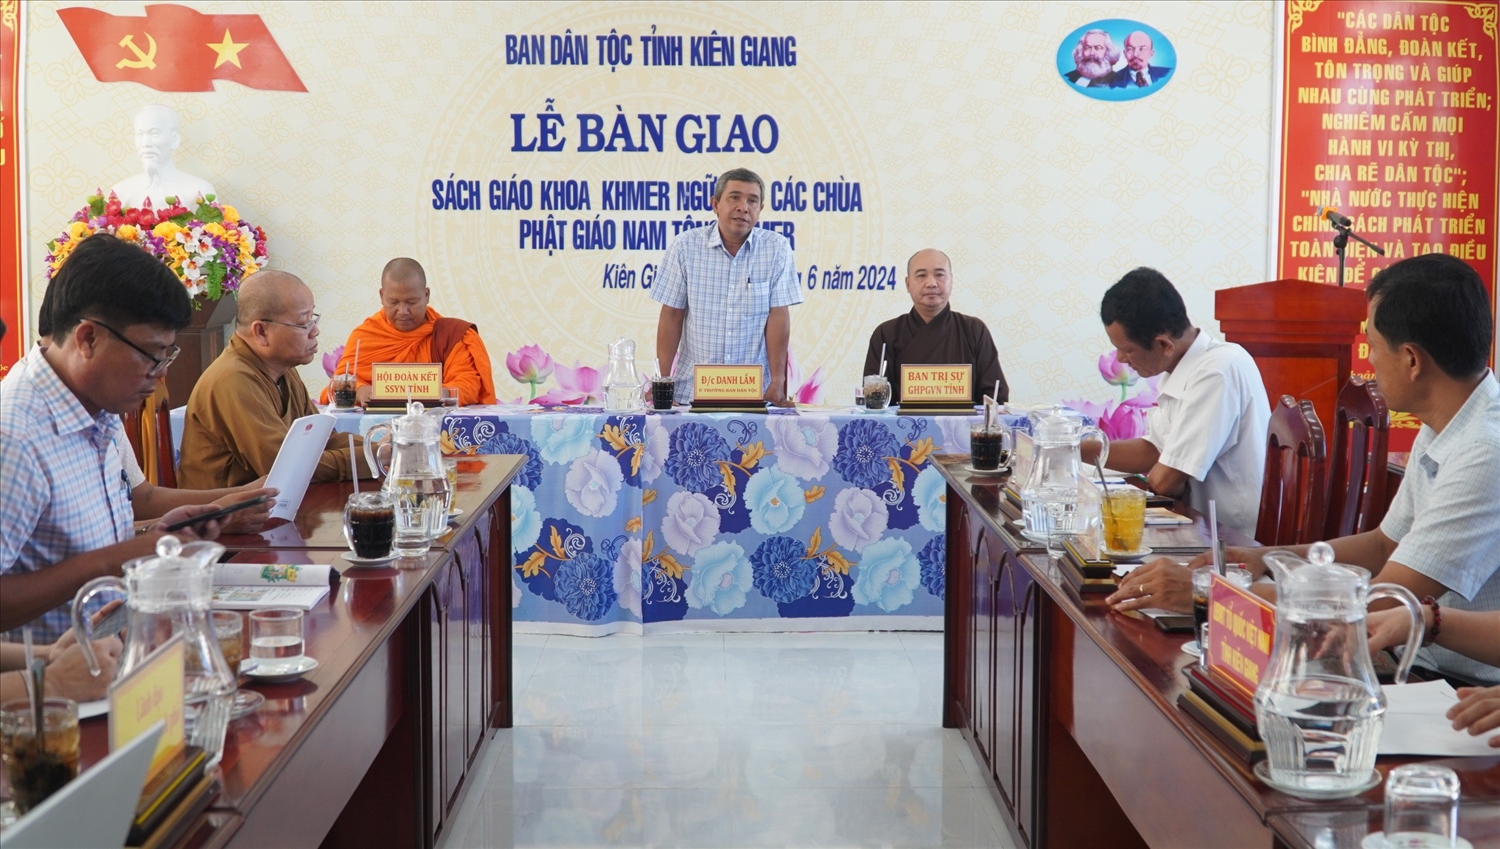 Ông Danh Lắm - Phó trưởng Ban Dân tộc tỉnh Kiên Giang phát biểu tại buổi lễ 